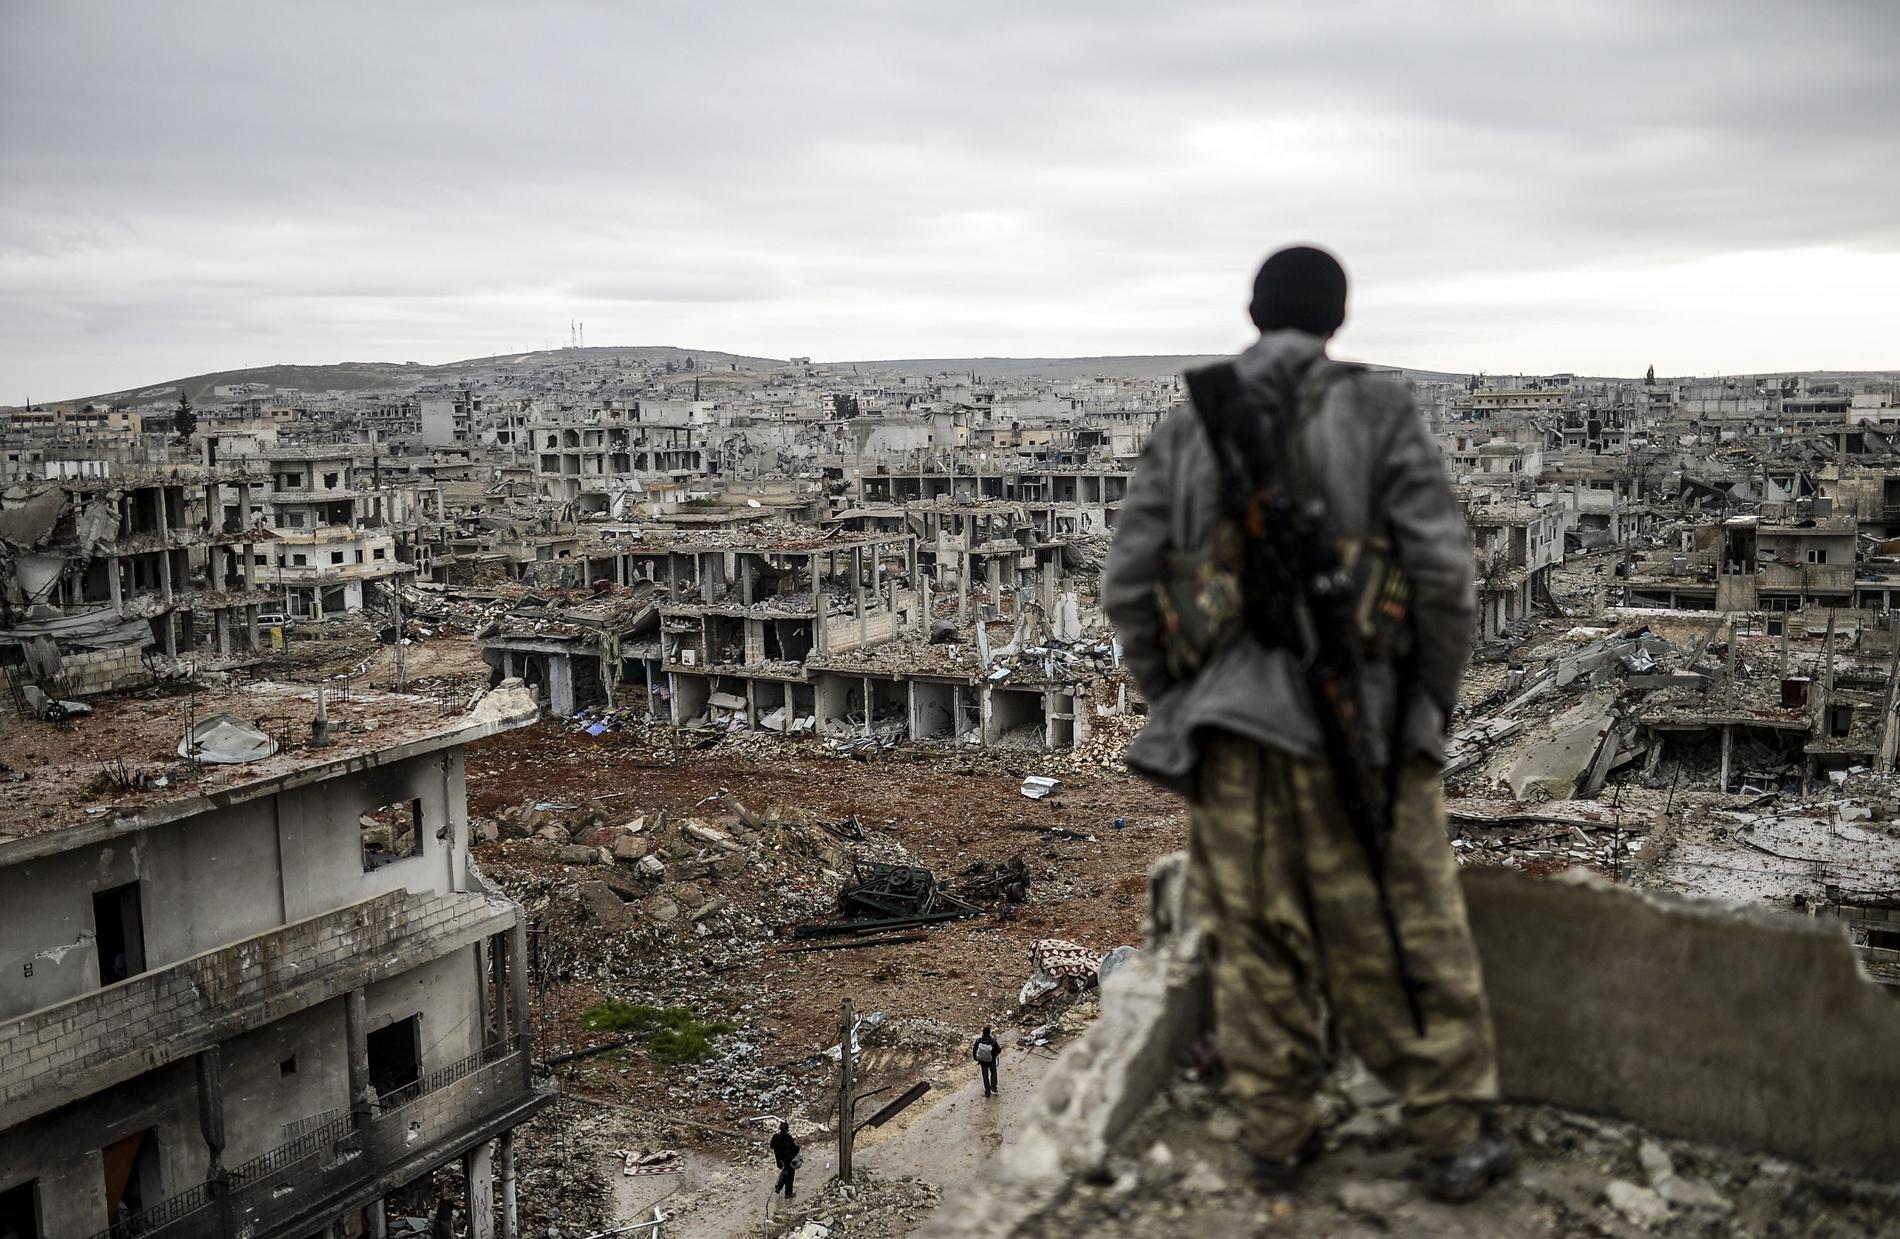 26 januari: Kurdiske soldaten Musa, 25, blickar ut över staden Kobane, nära turkiska gränsen som förstörts efter attacker från IS – och nu återtagits.